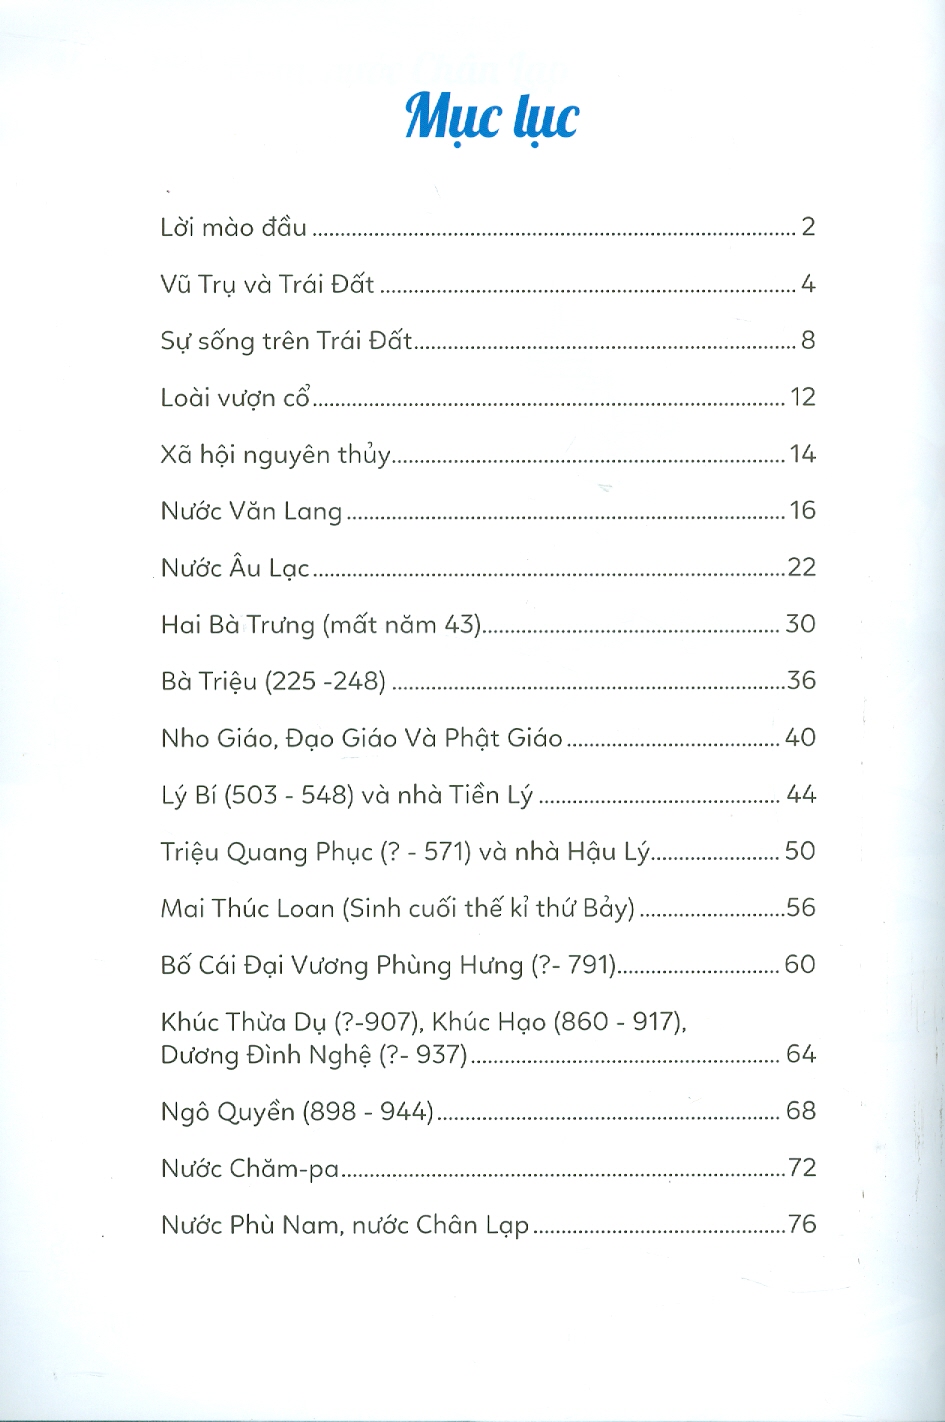 Lịch Sử Việt Nam Kể Bằng Thơ, Tập 1: Từ Thời Hồng Bàng Đến Chiến Thắng Bạch Đằng (Năm 938)